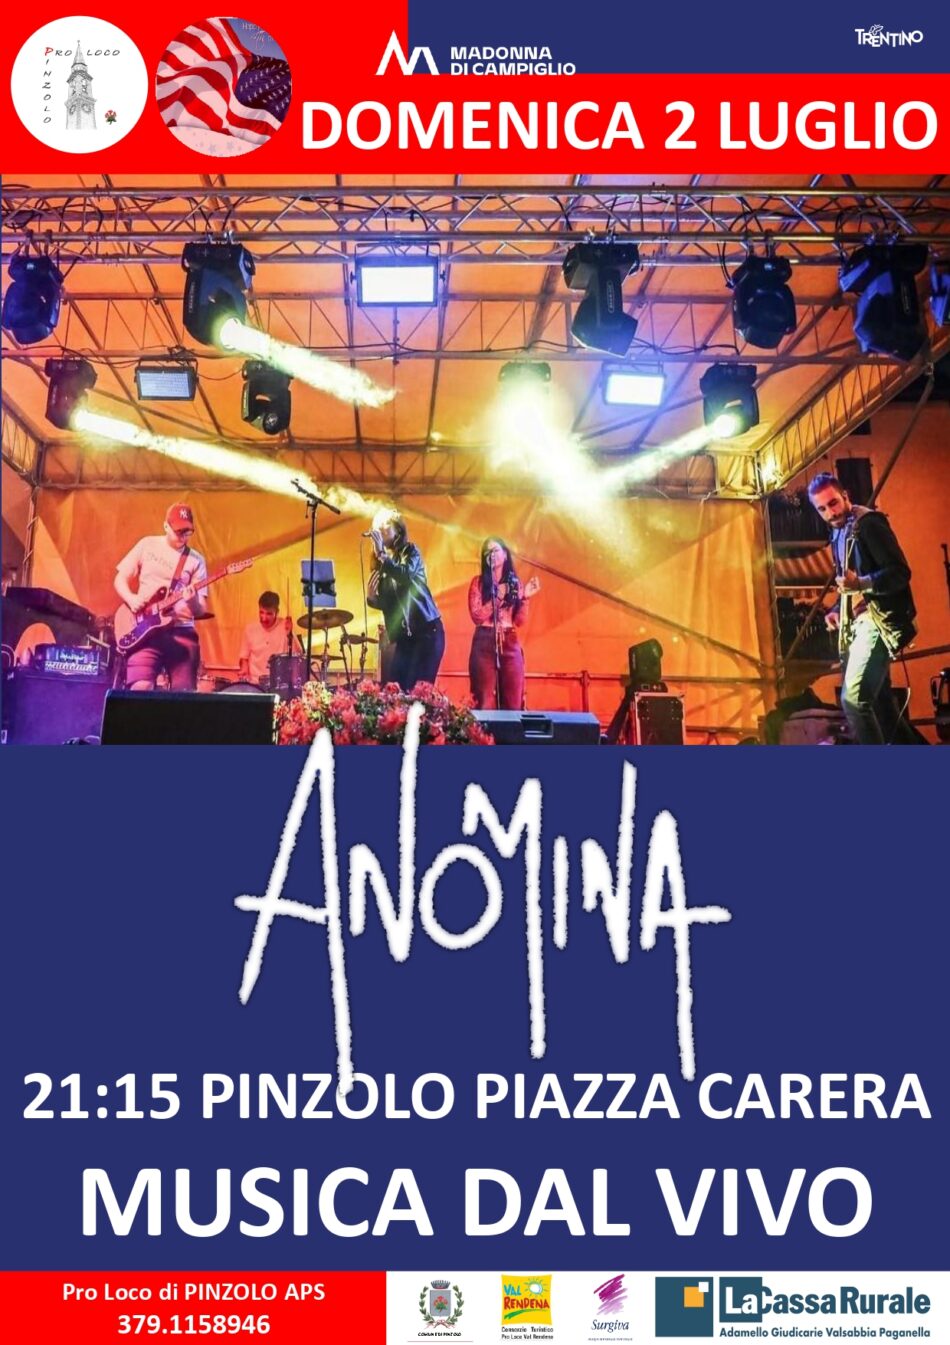 L’Estate è Pinzolo: Domenica 2 luglio ore 21.15 ANONIMA musica dal vivo in Piazza Carera